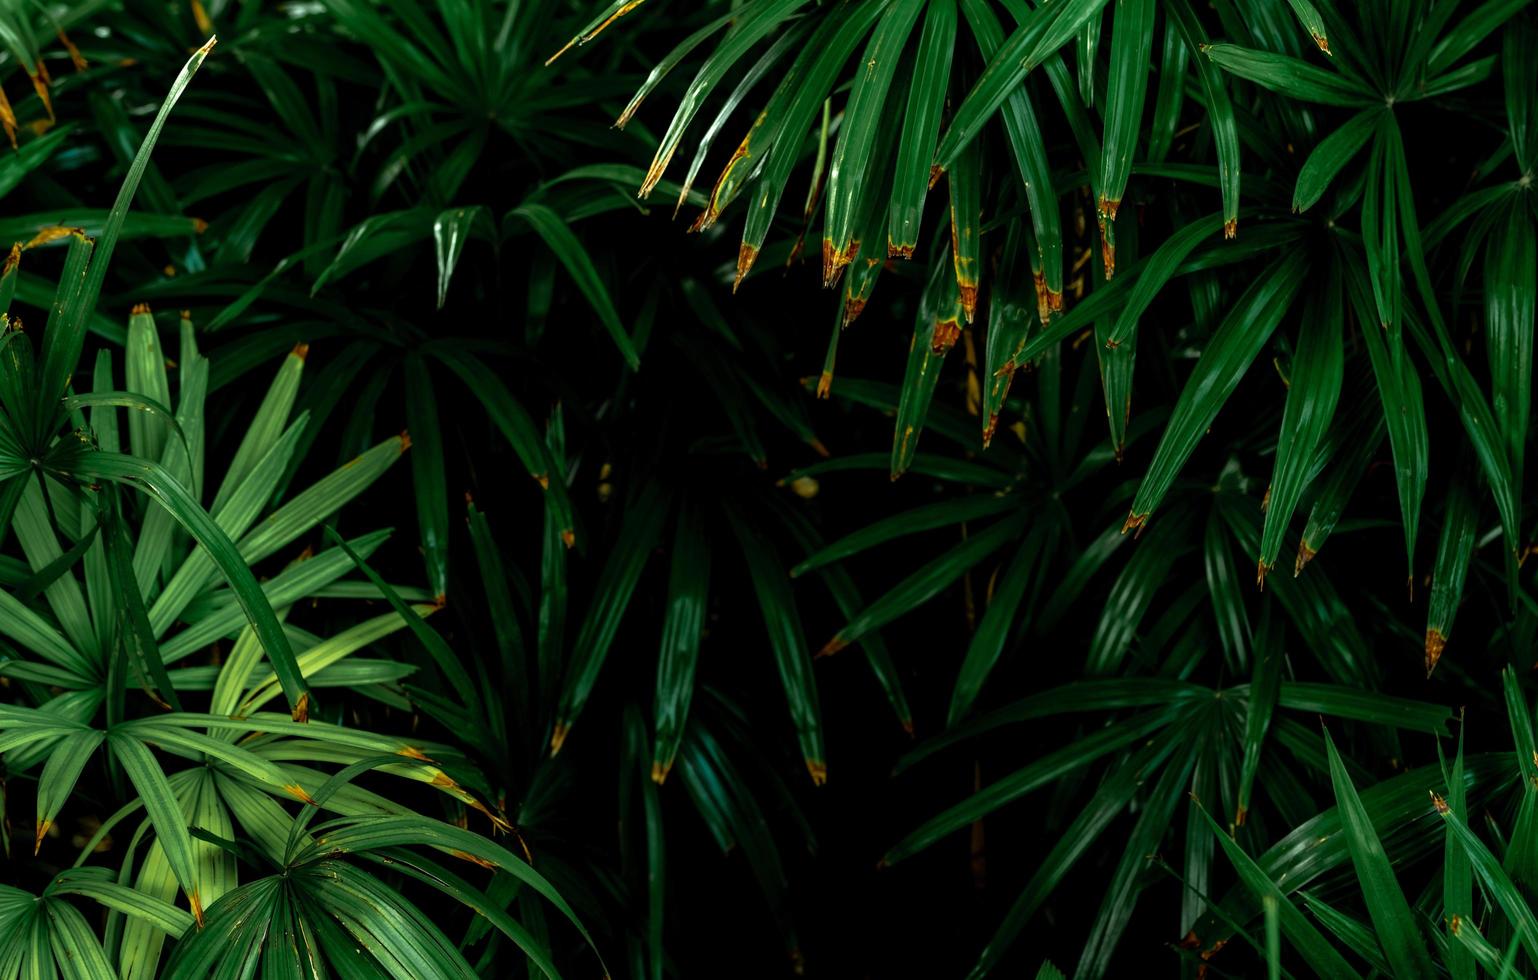 foco seletivo em folhas verdes escuras no jardim. textura de folha verde esmeralda. abstrato da natureza. floresta tropical. acima vista de folhas verdes escuras com padrão natural. planta tropical. foto